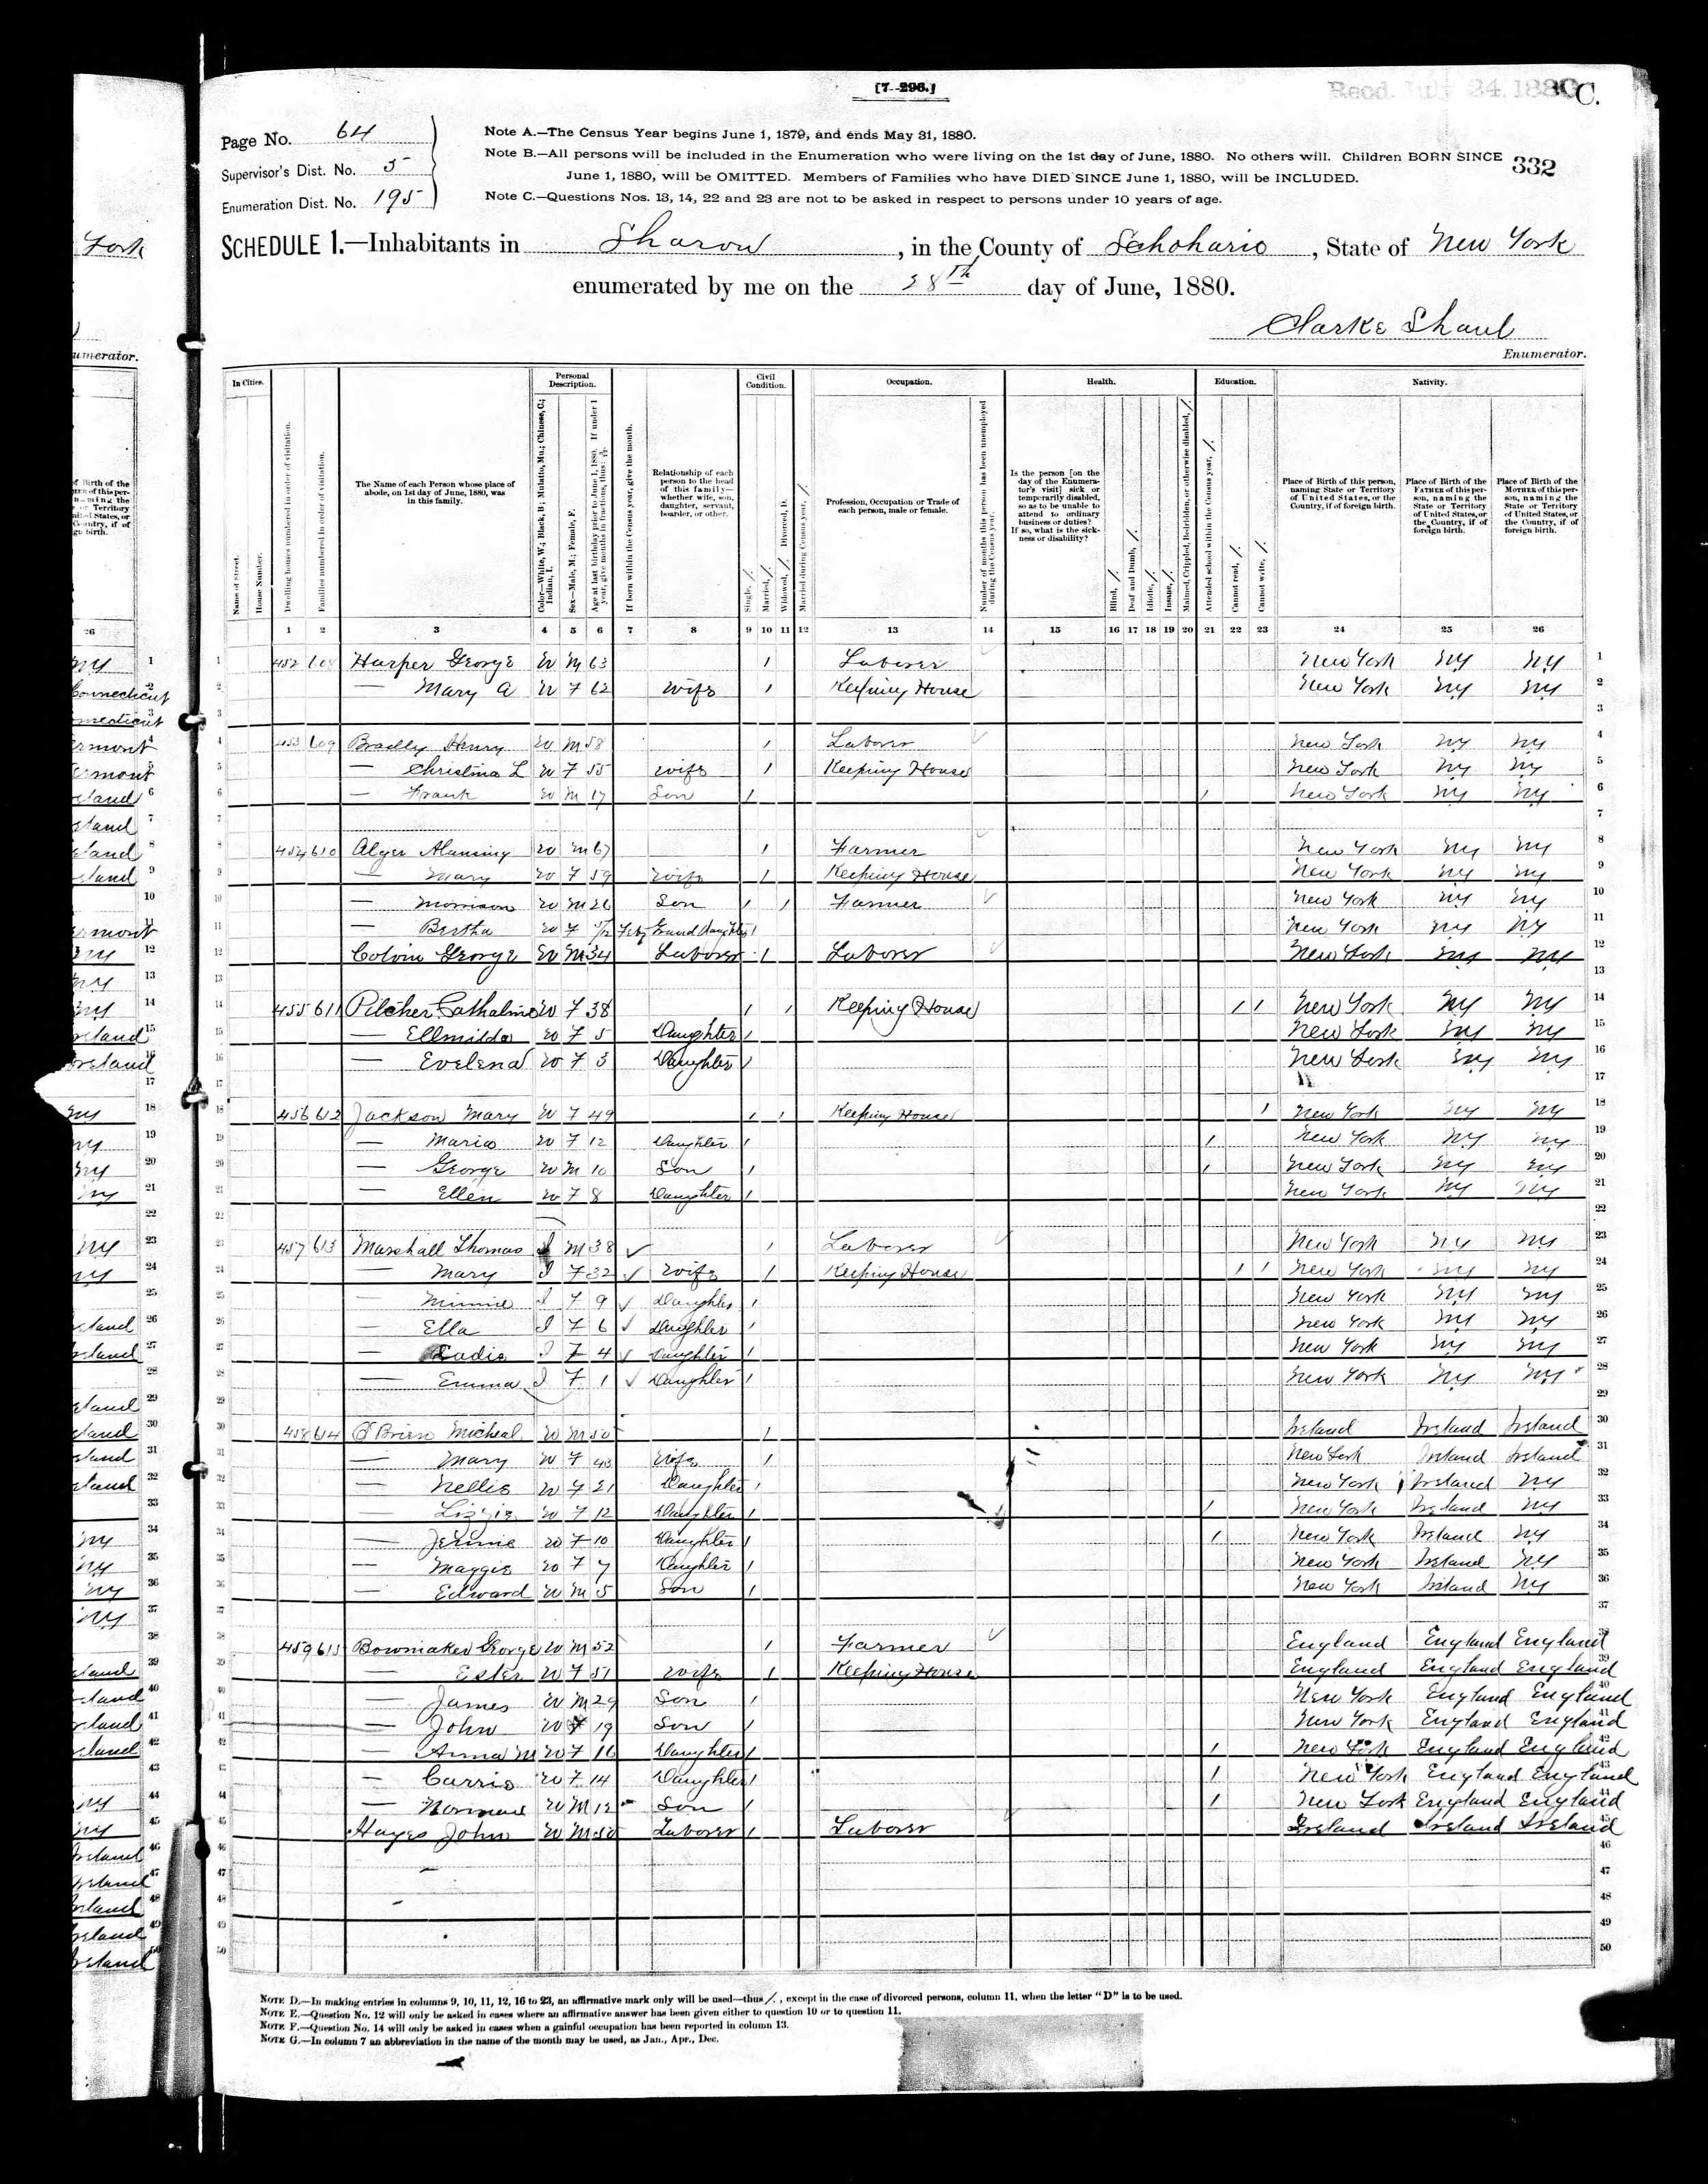 United States Census Record, 1880